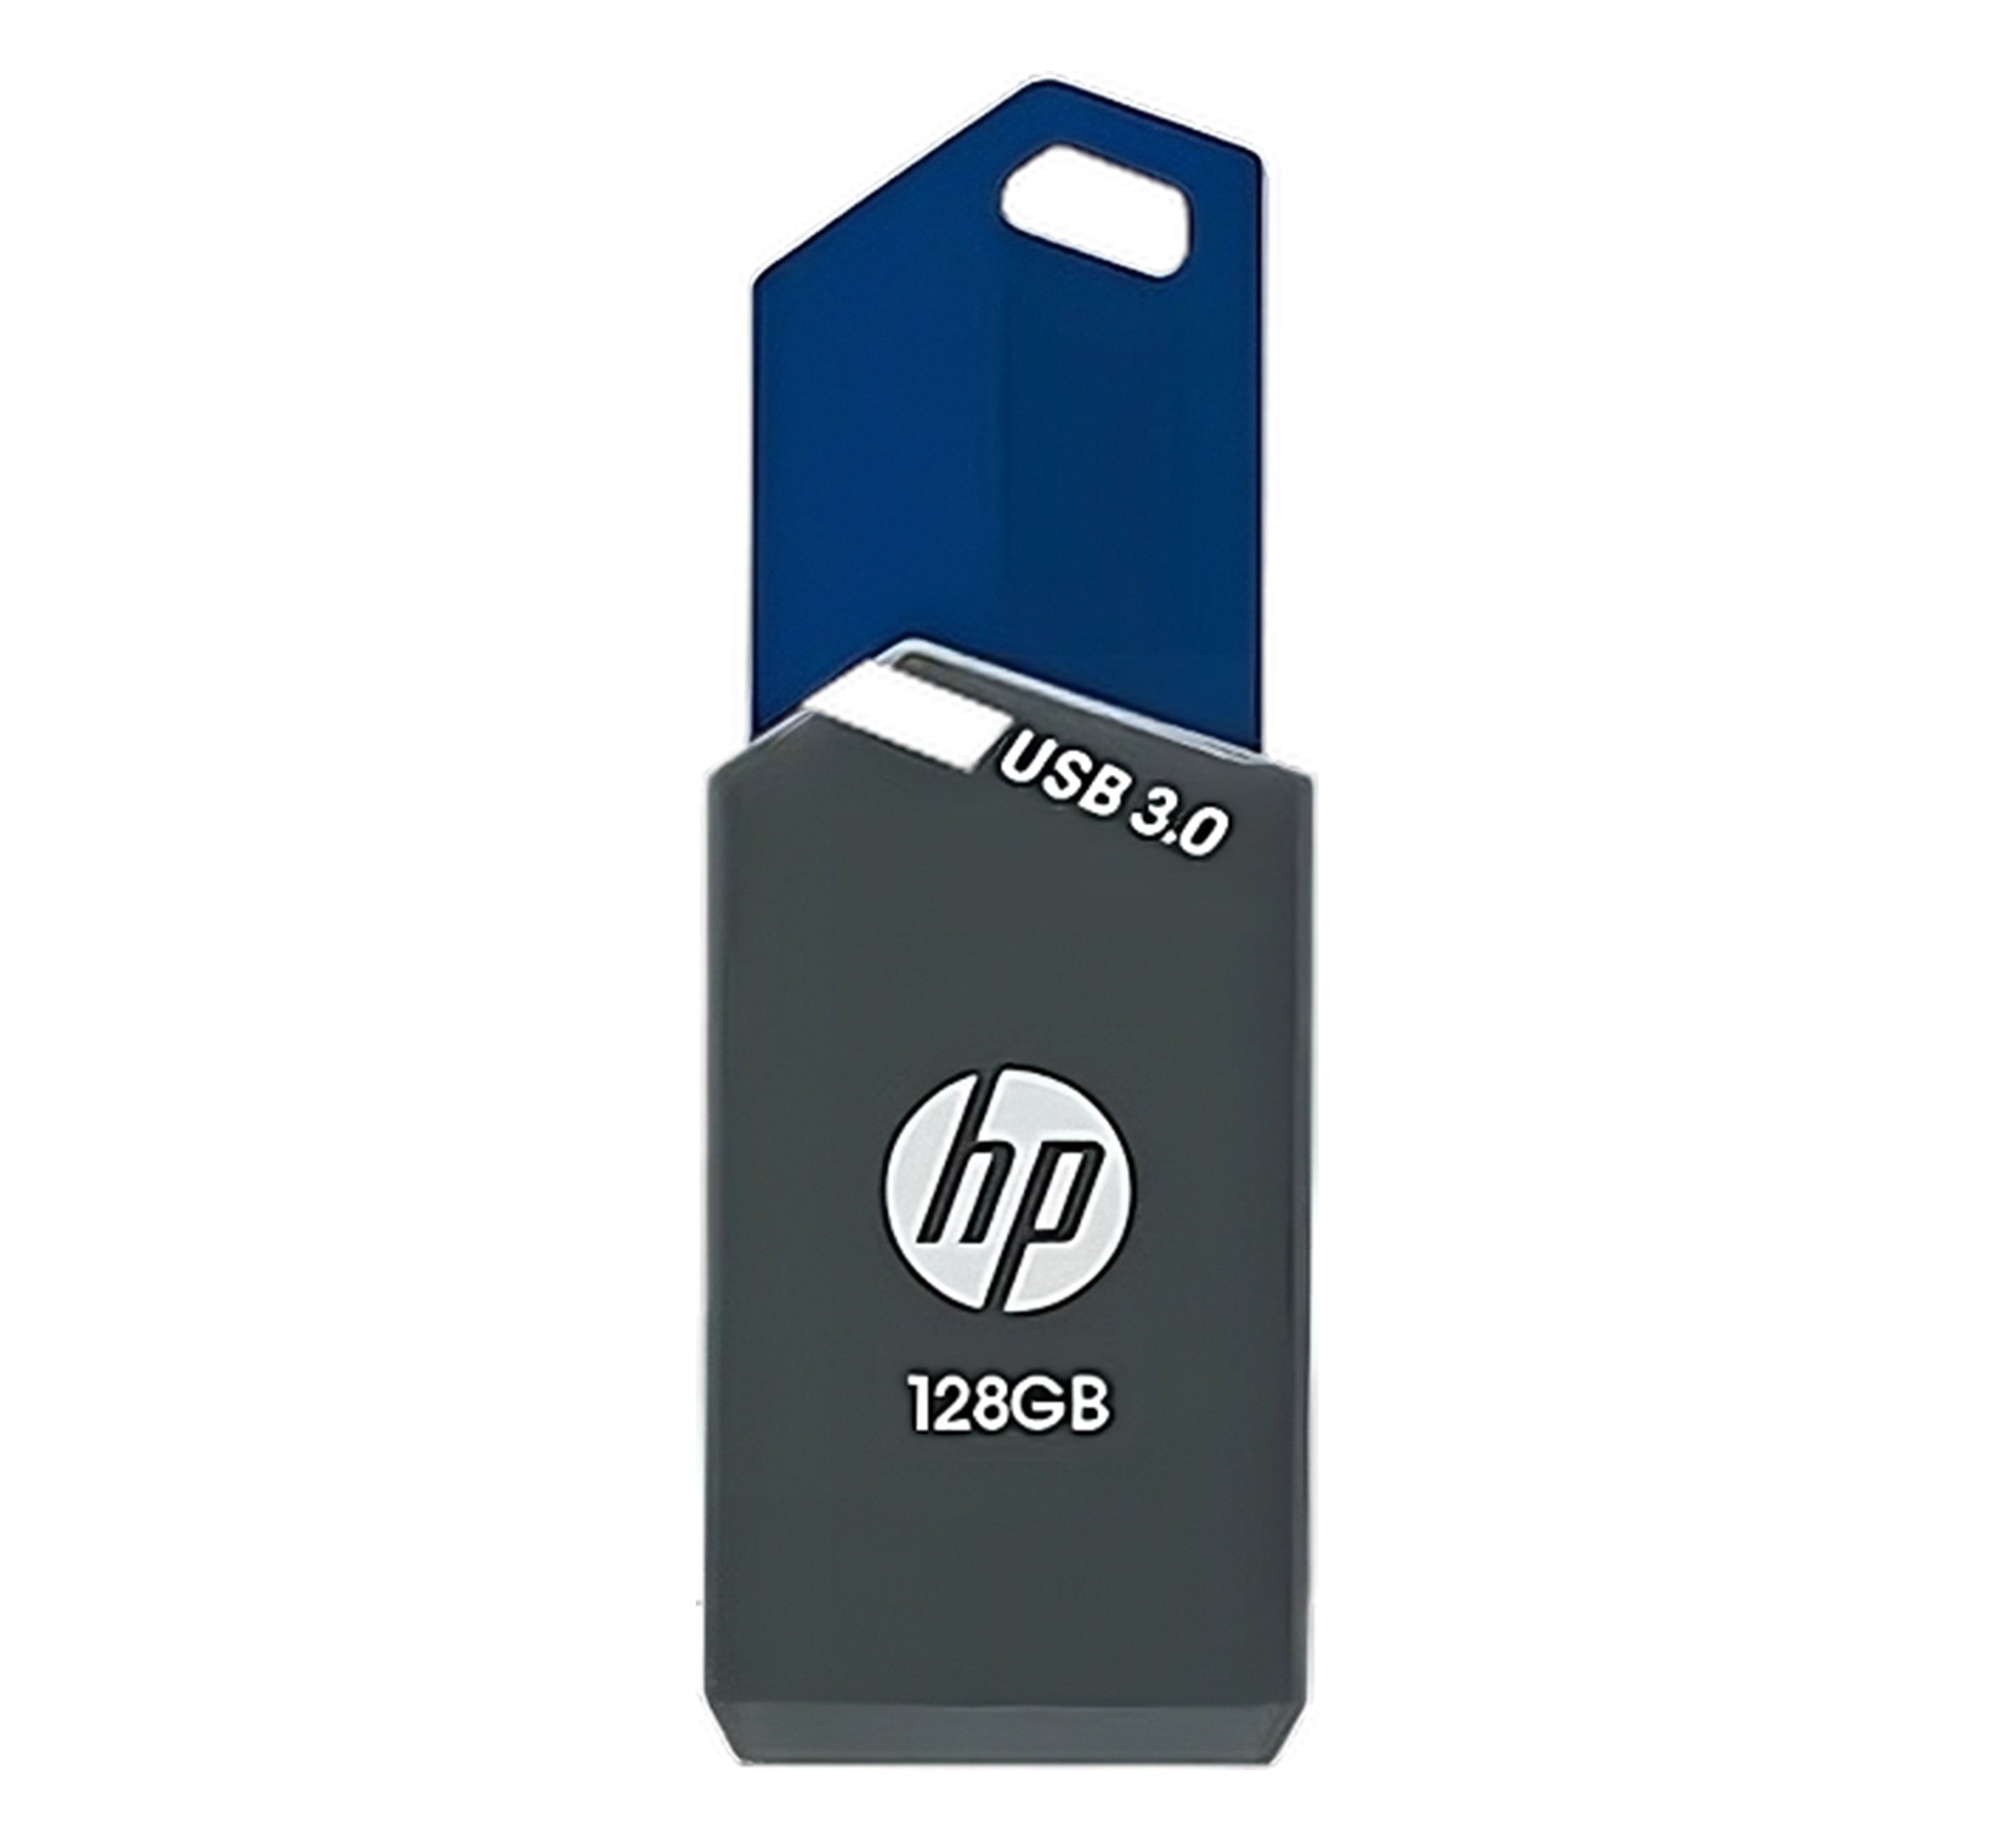 Hp Memoria flash 128GB usb 3.0